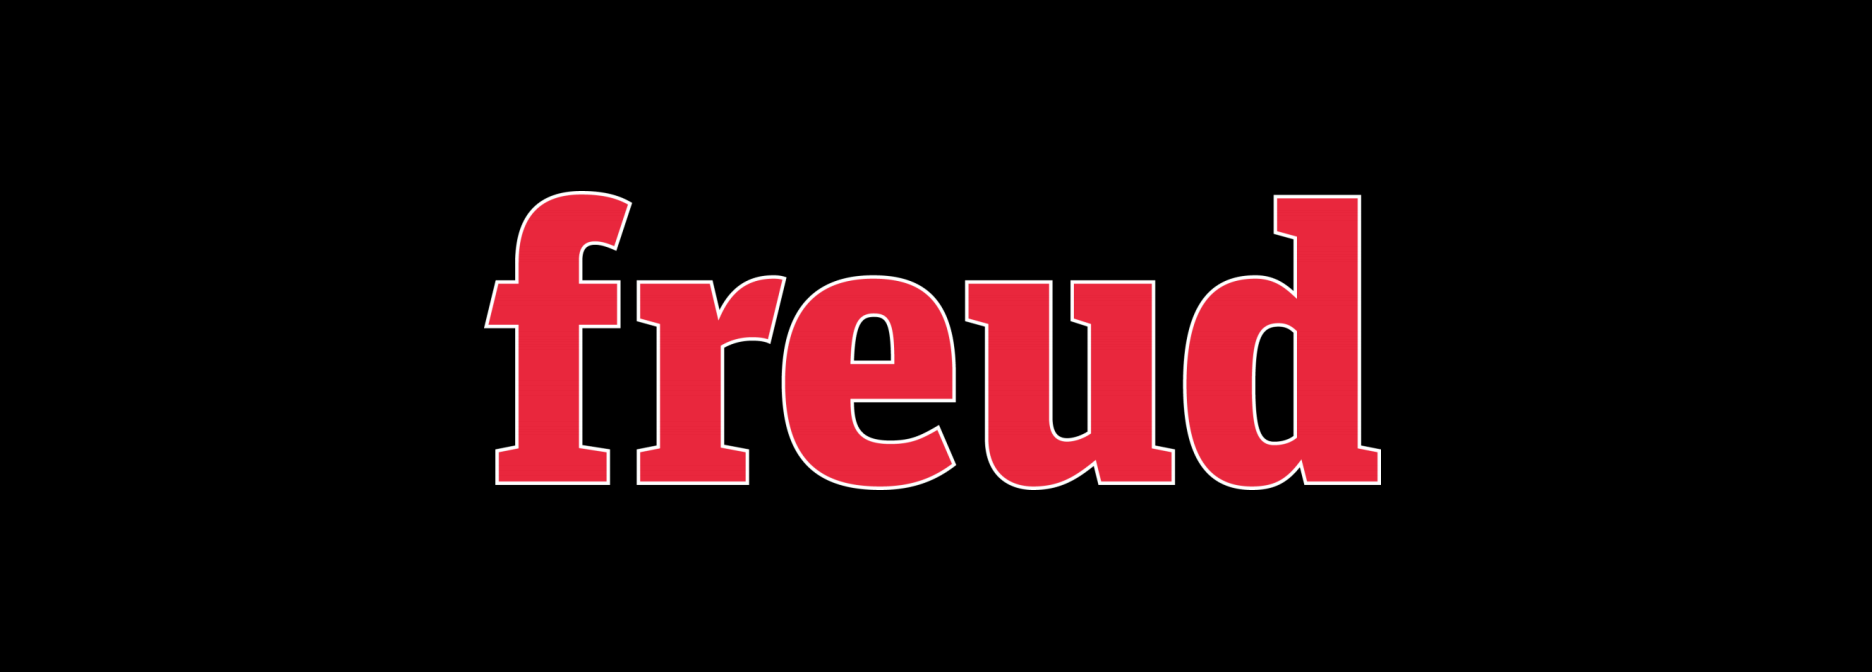 logo-freud.png